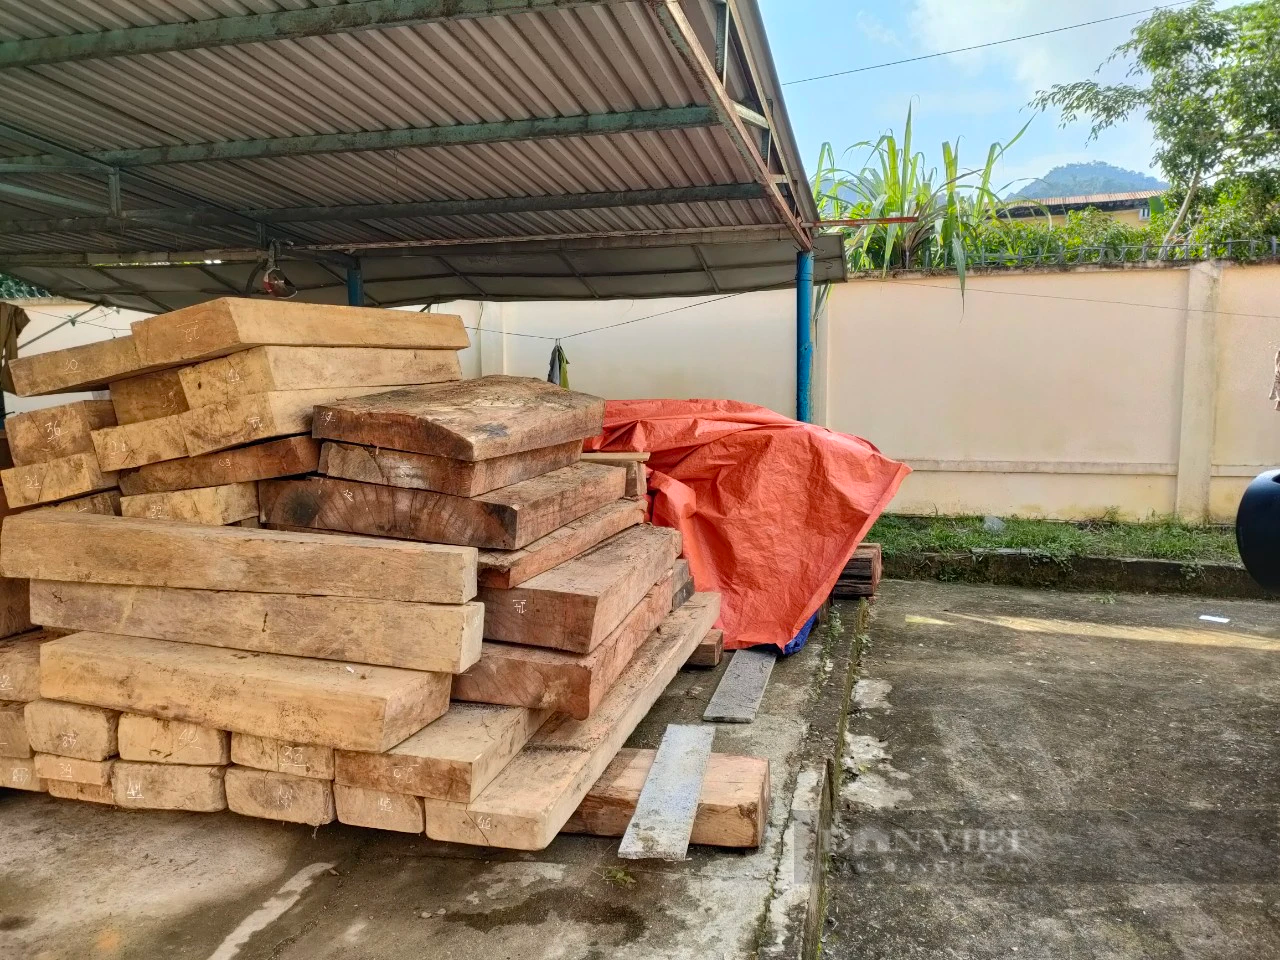 Phạt chủ gỗ cất giấu hơn 5,6m3 gỗ trong đất của Trưởng phòng nội vụ huyện ở Quảng Nam - Ảnh 1.